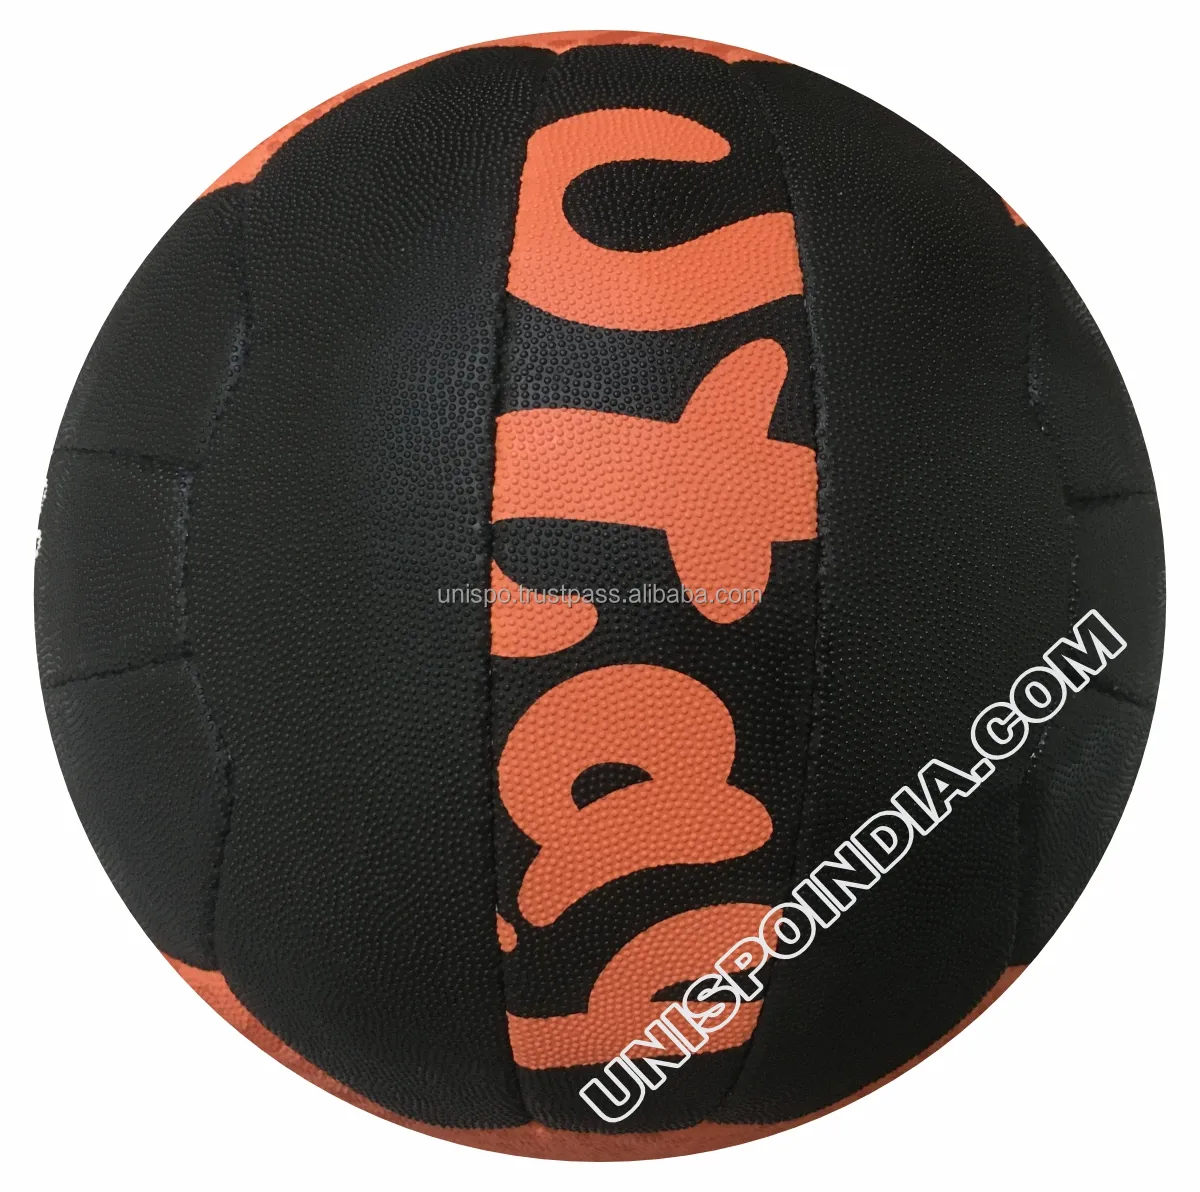 ネットボール2022トレンディな品質のスポーツボール信頼性の高いアイテムネットボールプレミアム品質の特別に作られたスポーツボール